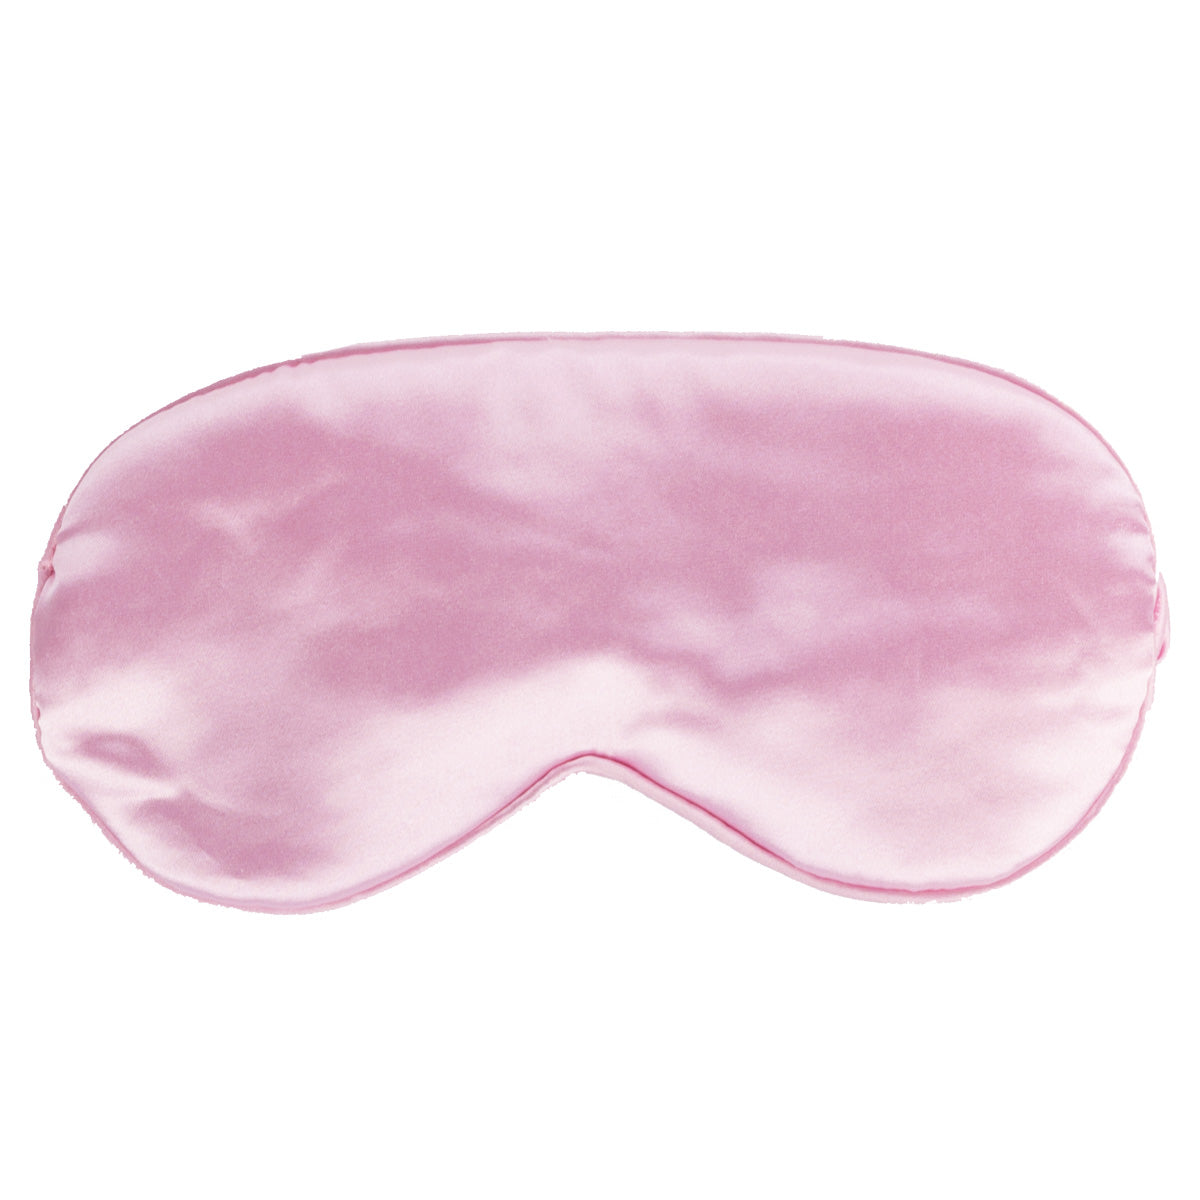 Slaapmasker roze cadeaupakket voor haar